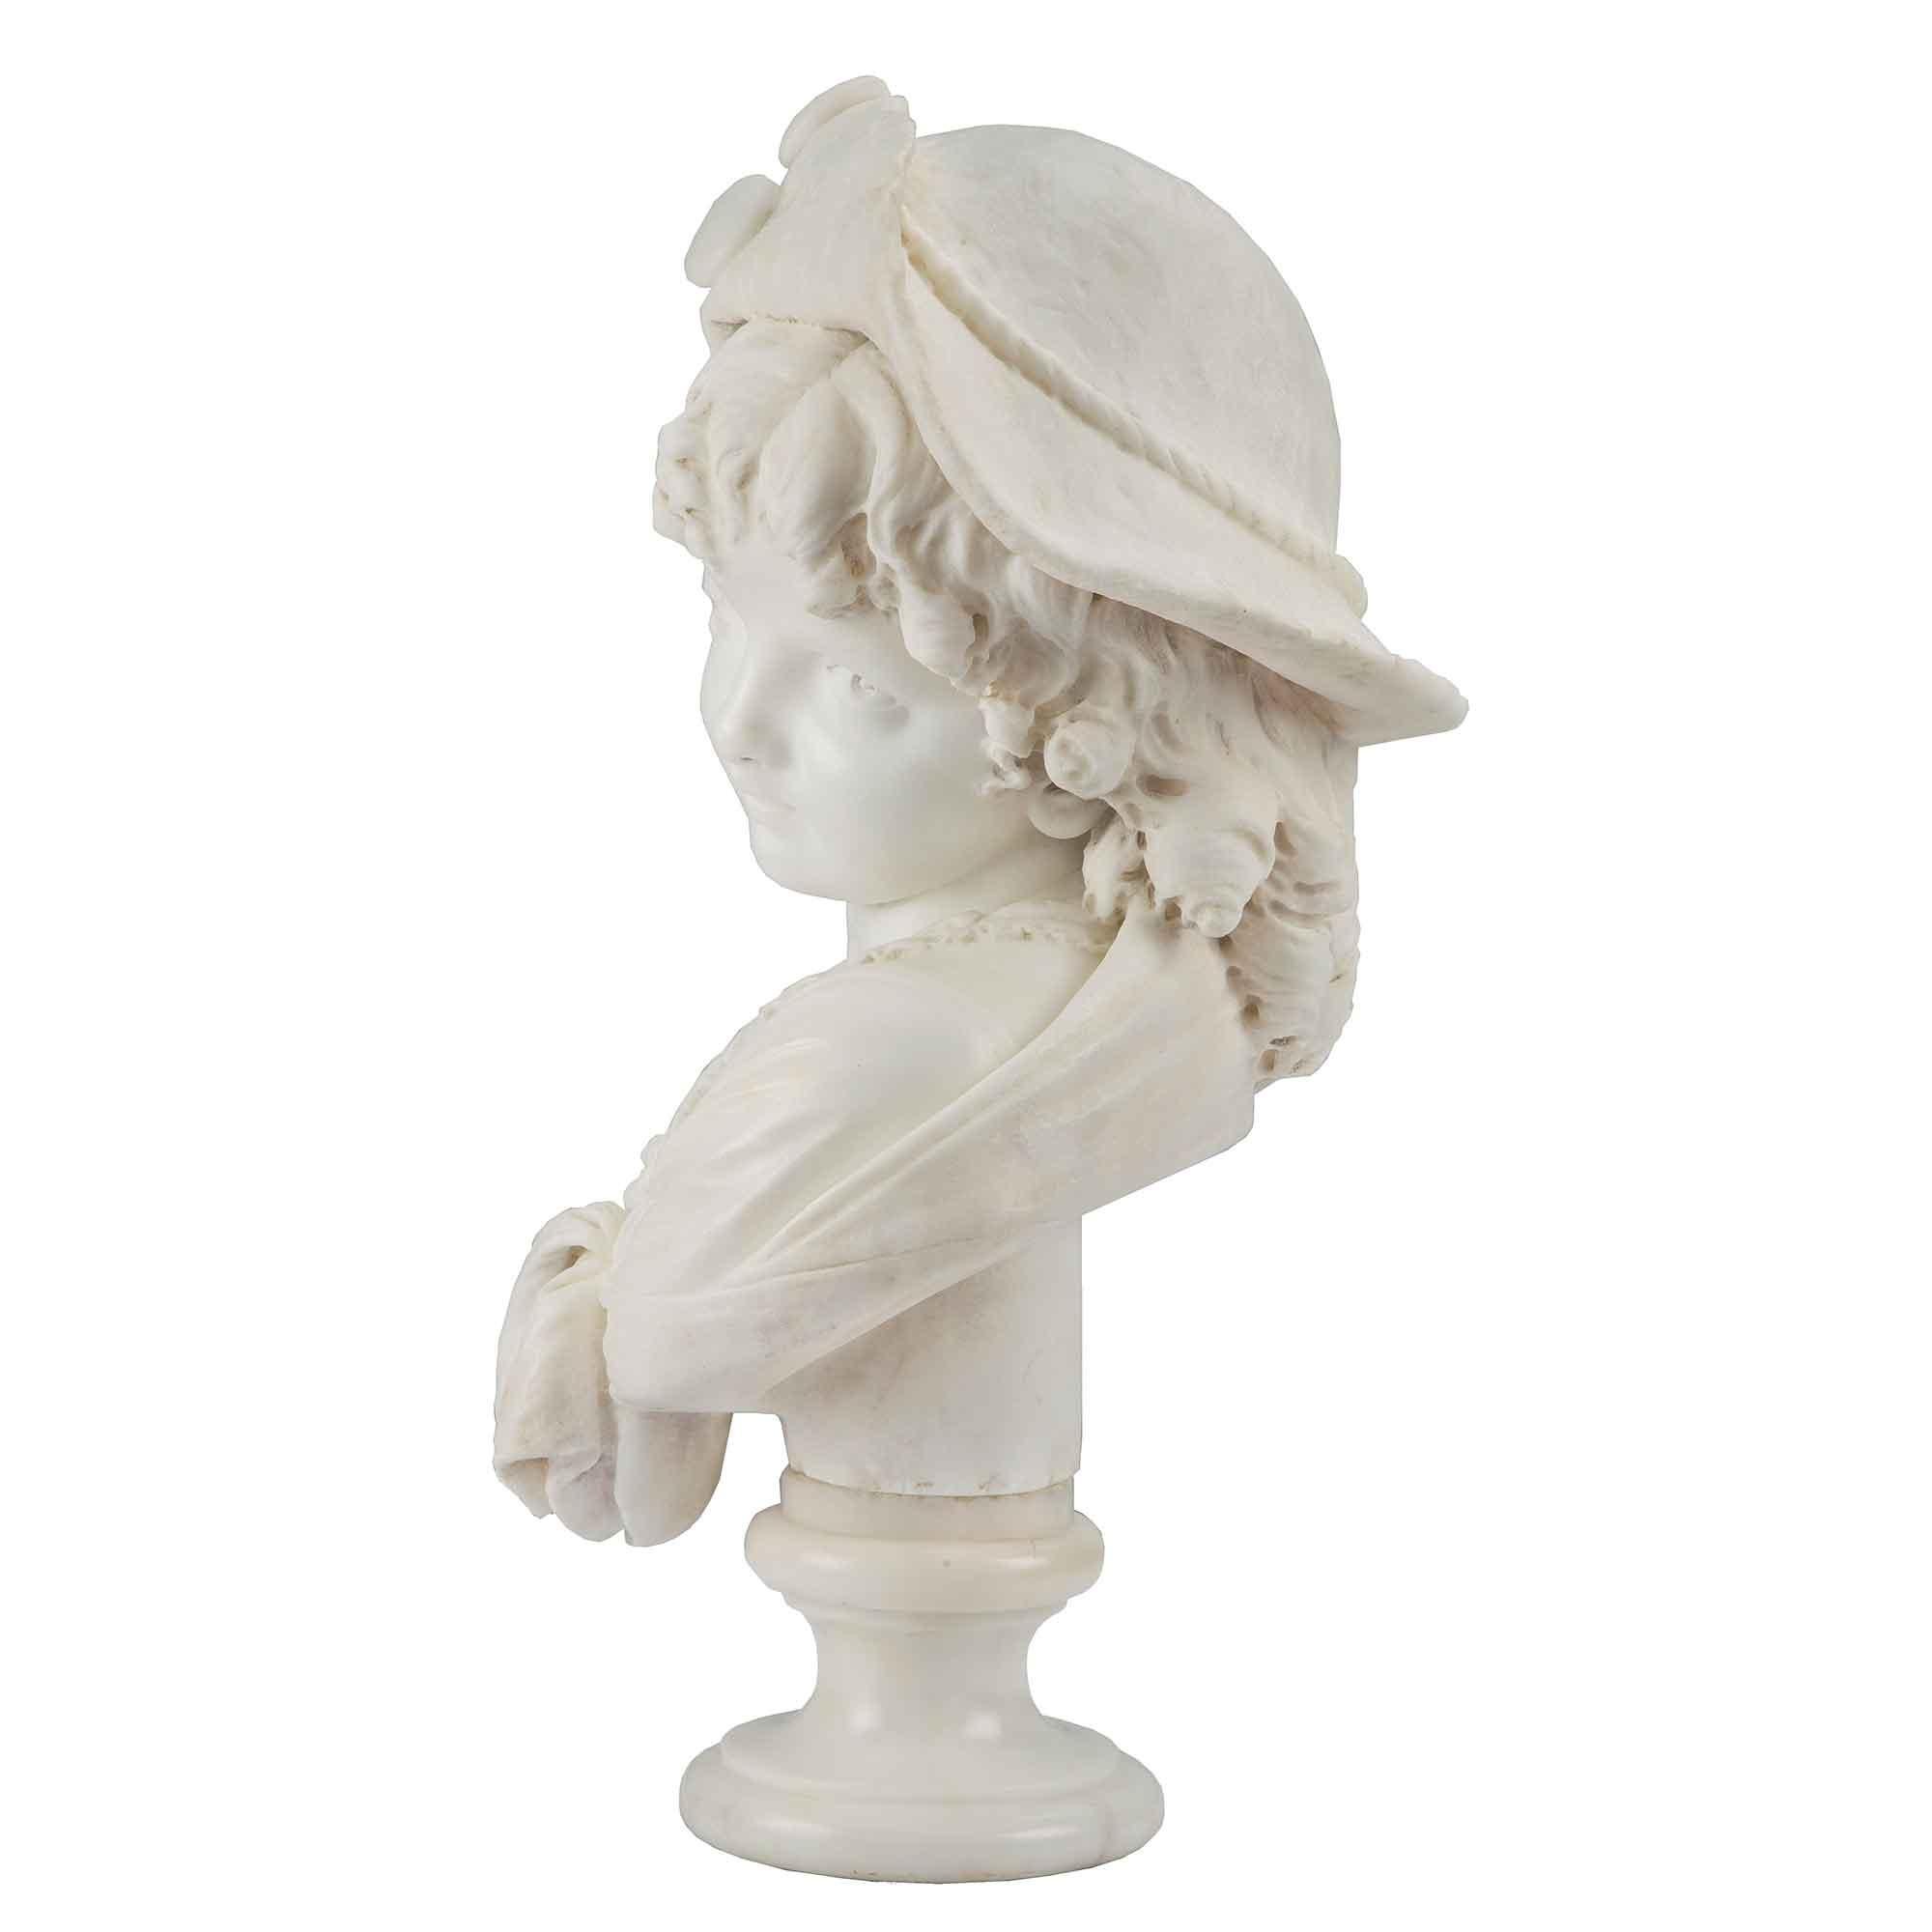 Très charmant buste en marbre blanc de Carrare signé du XIXe siècle représentant une jeune fille élégante. Élevée sur un socle circulaire, elle est vêtue d'une robe classique et porte un châle sur les épaules. Avec une expression adorable et de